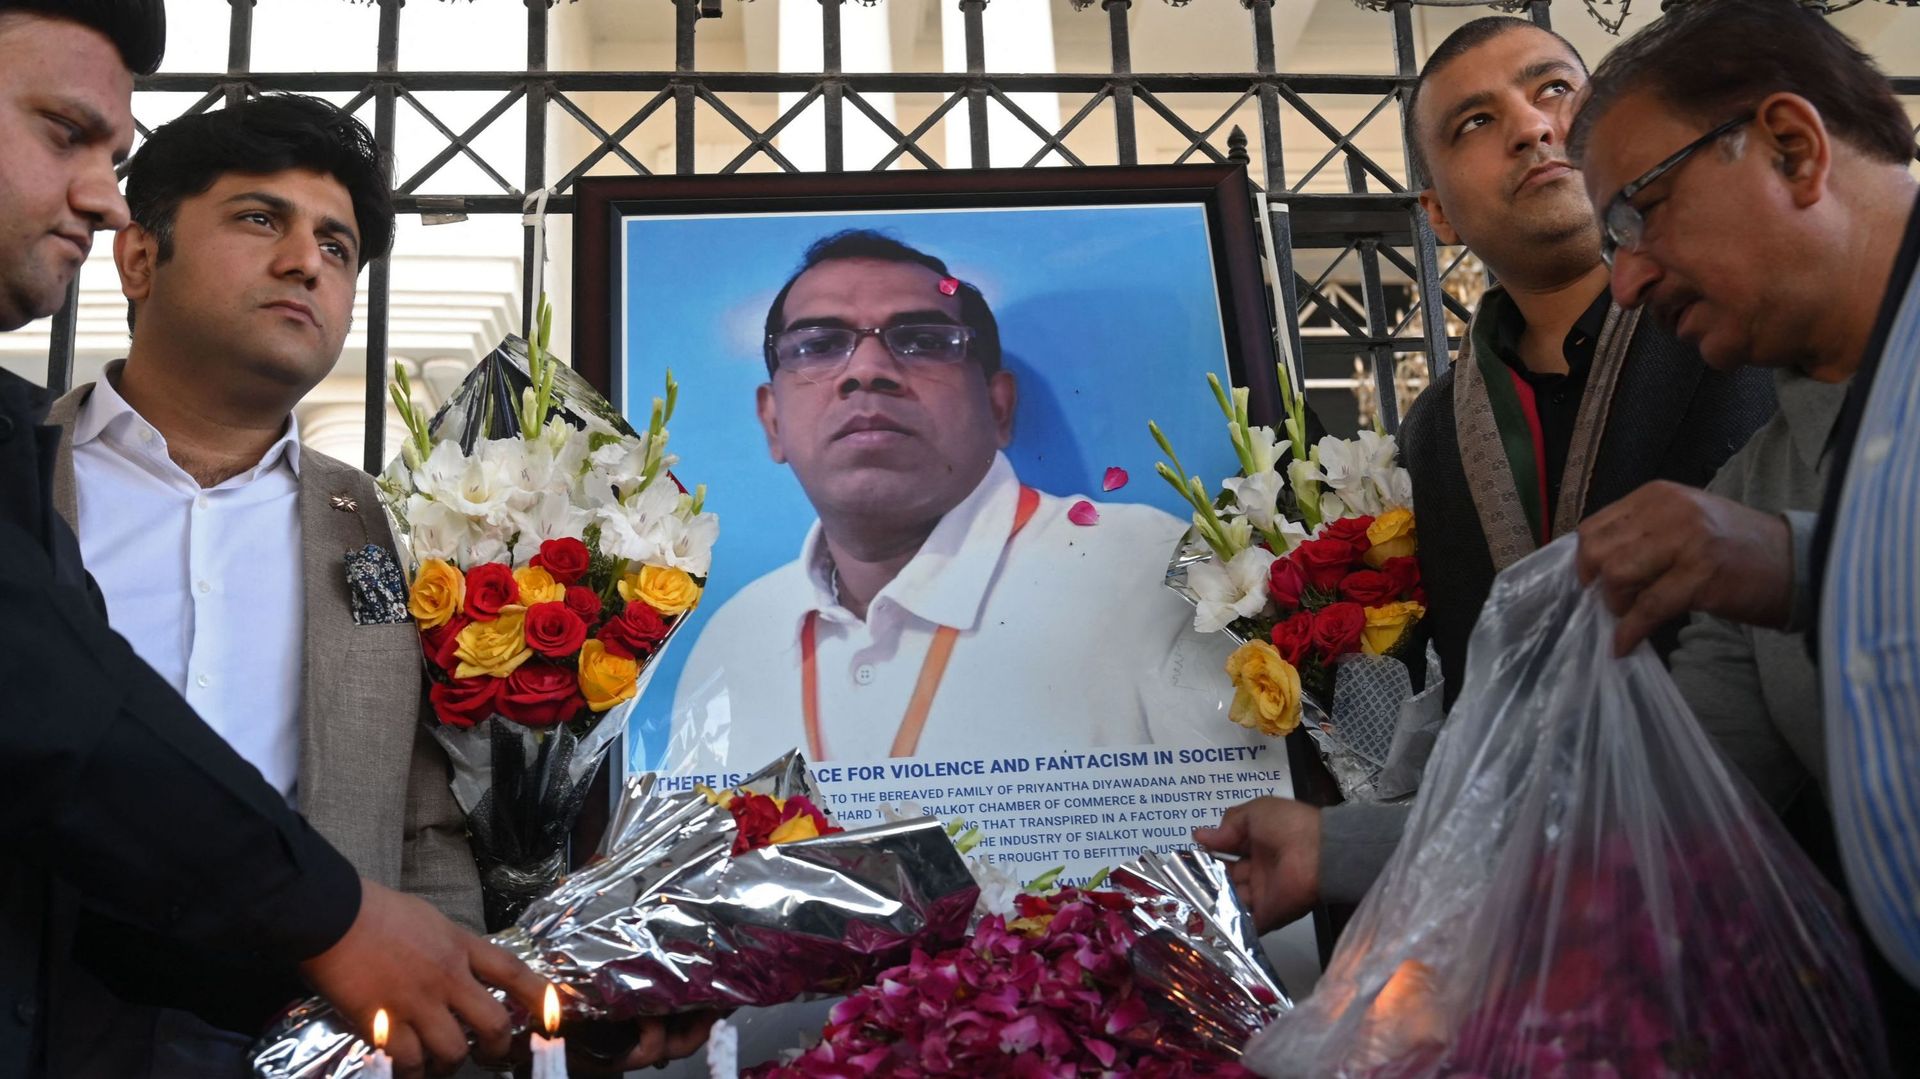 Des industriels pakistanais rendent hommage à côté d’une photo du directeur d’usine sri-lankais décédé, à Sialkot, le 4 décembre 2021, après qu’il ait été battu à mort et incendié par une foule qui l’accusait de blasphème, selon des responsables.